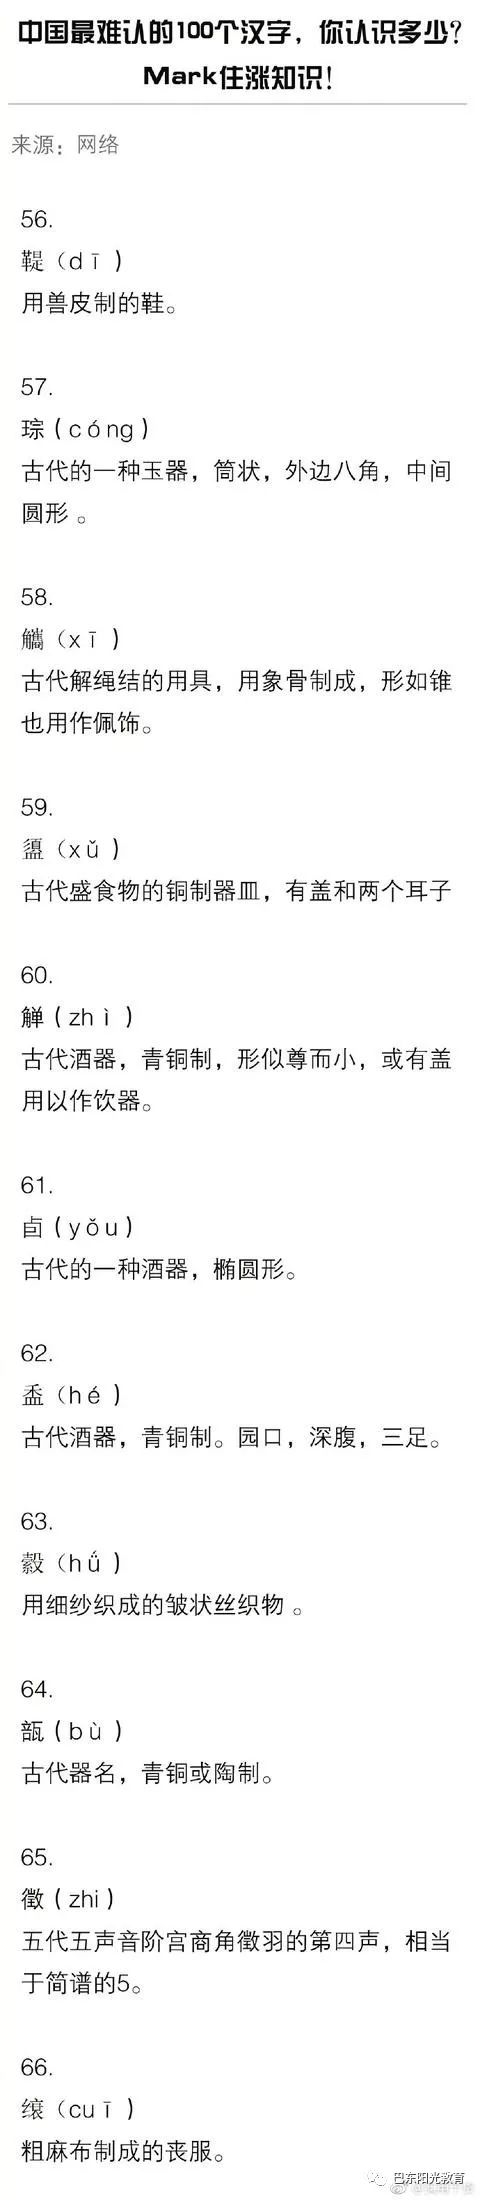 阳光课堂 中国最难认的100个汉字 你认识多少 文字